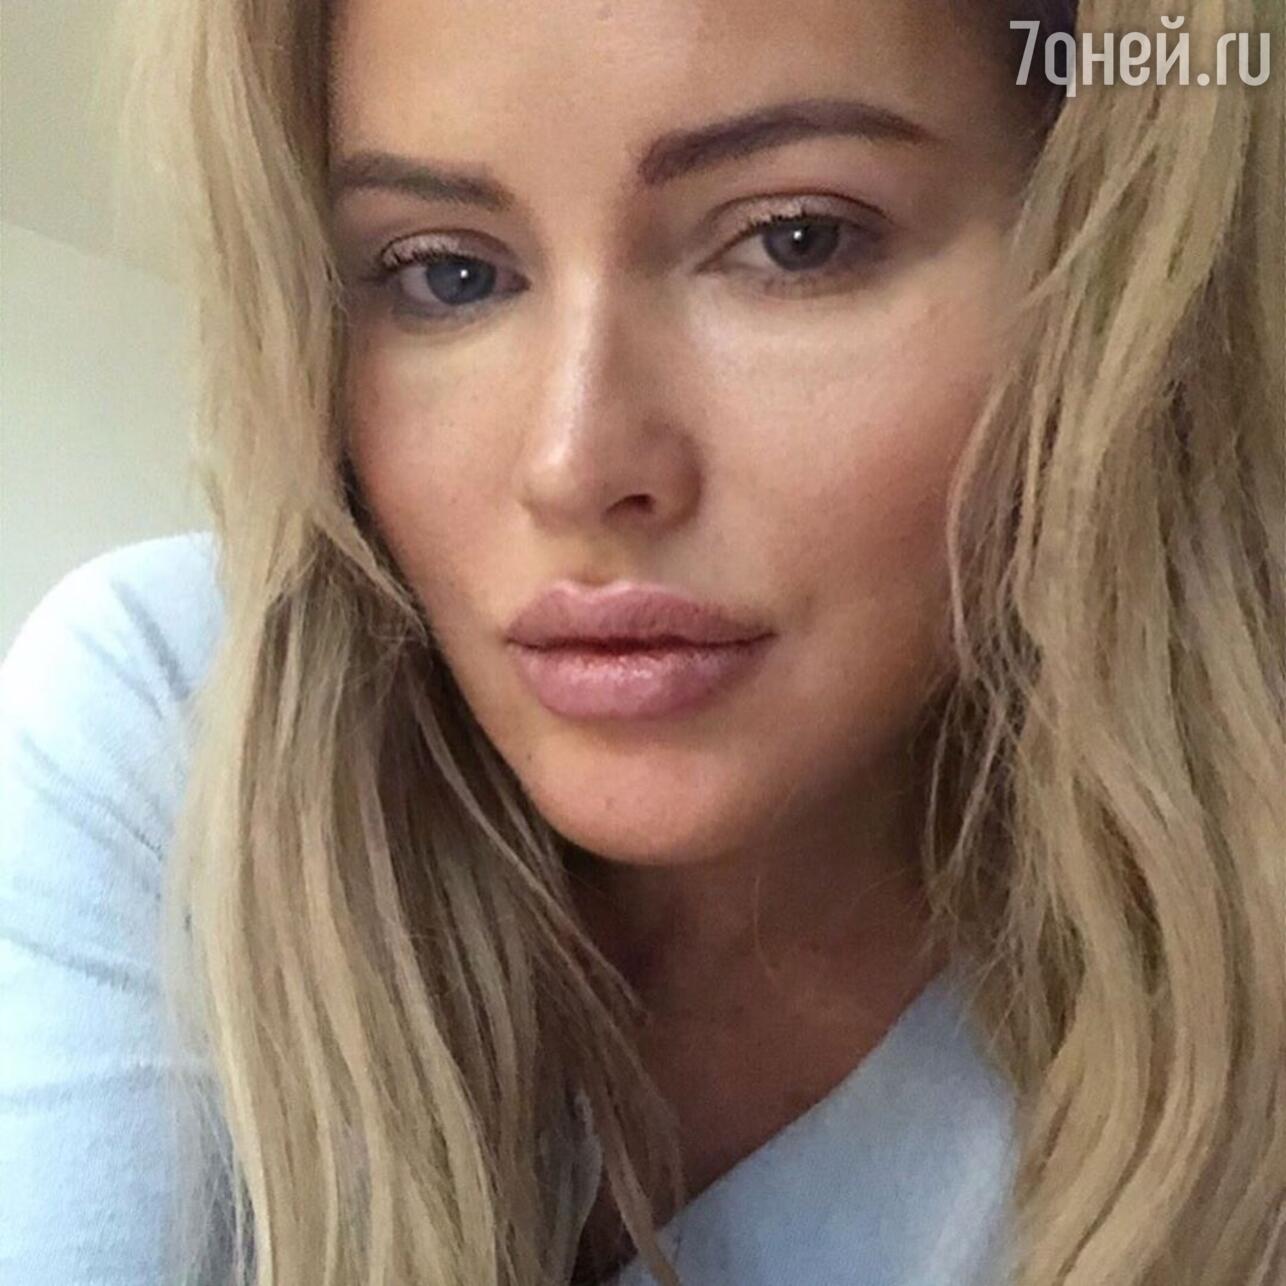 Дана Борисова намерена засудить экс-участника «Дома-2» за интимные видео